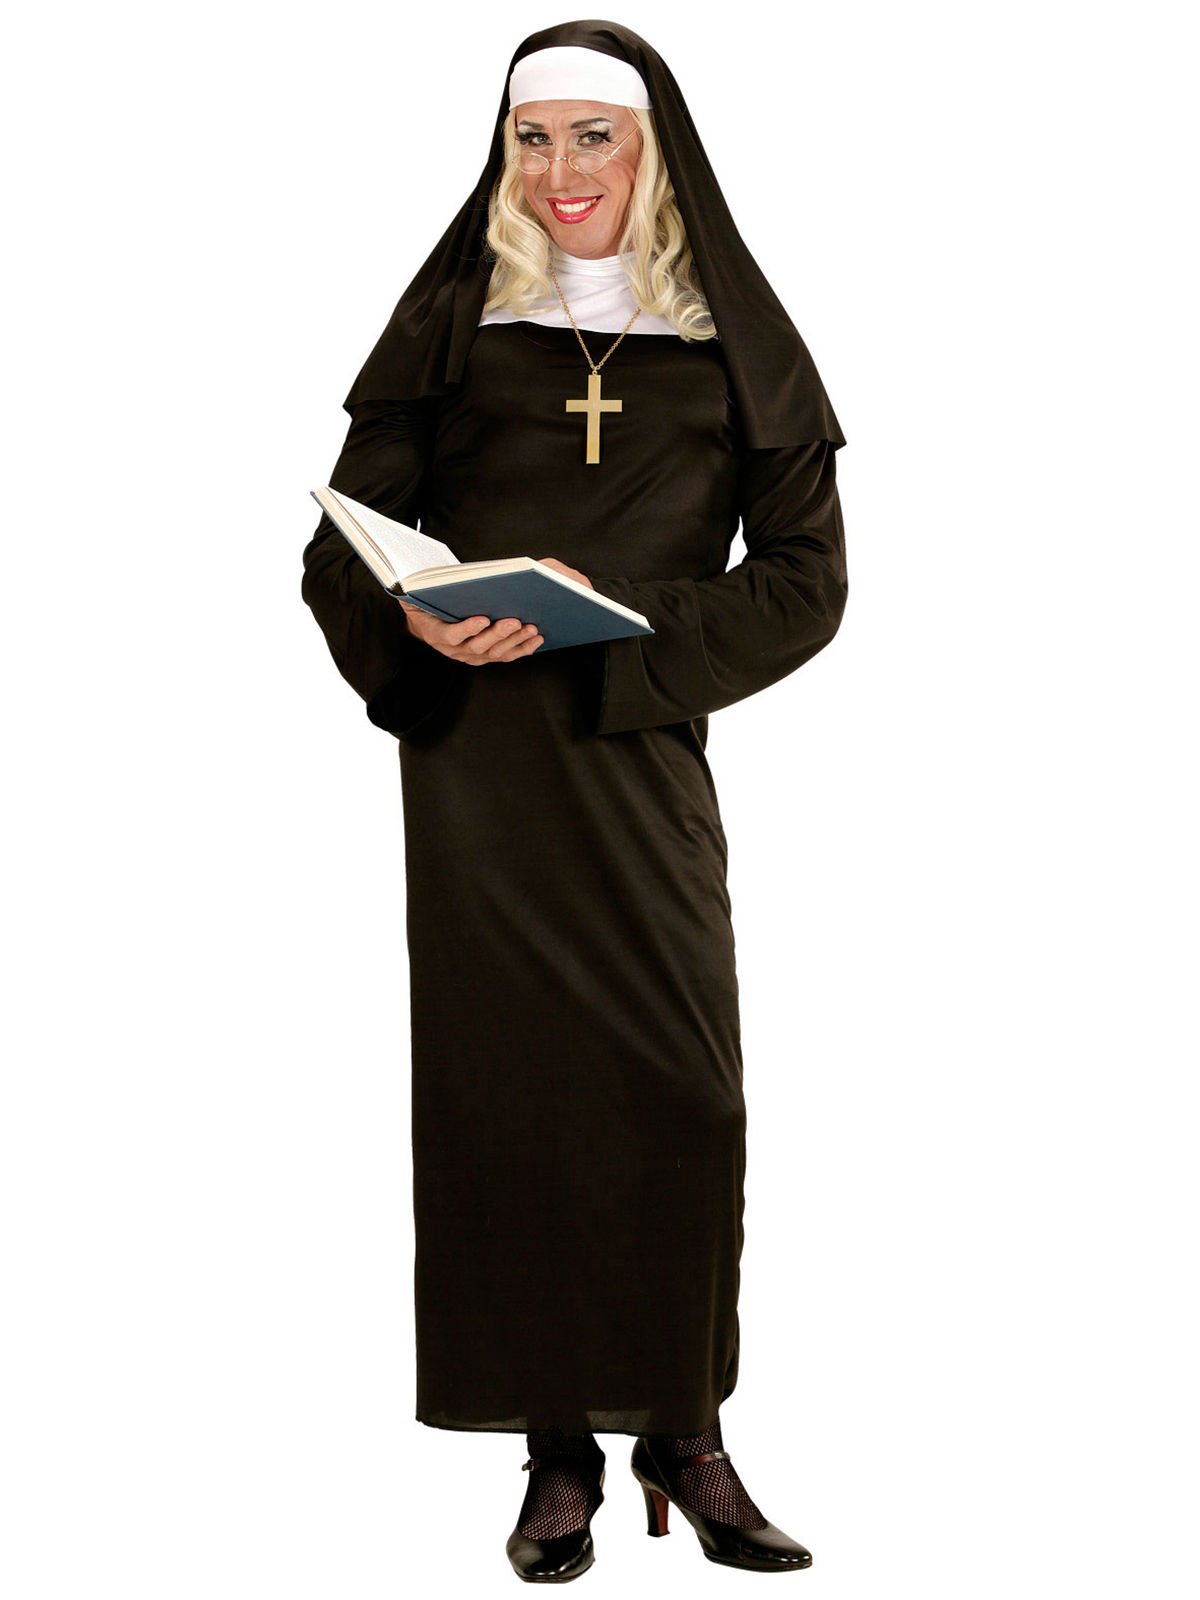 https://aussitot-fetes.fr/wp-content/uploads/2019/05/nun-religious-costume-for-women-black-white_304513.jpg